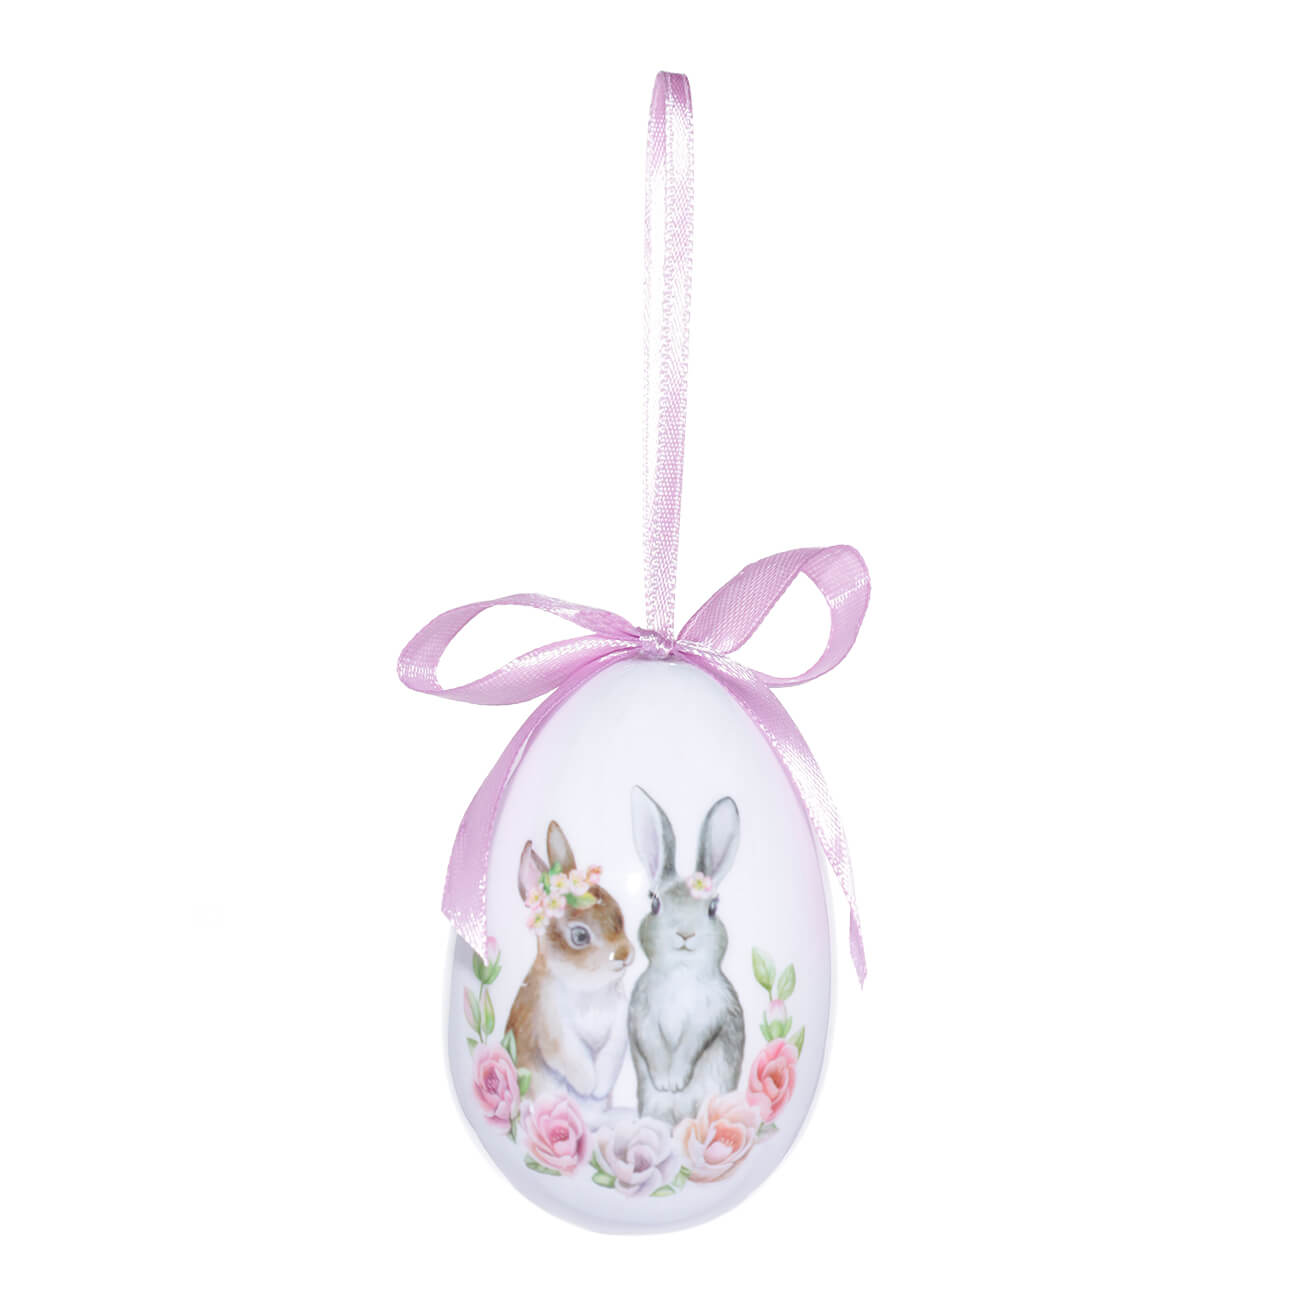 Подвеска, пасхальное яйцо, 8 см, пенопласт, лиловая, Кролики в цветах, Easter